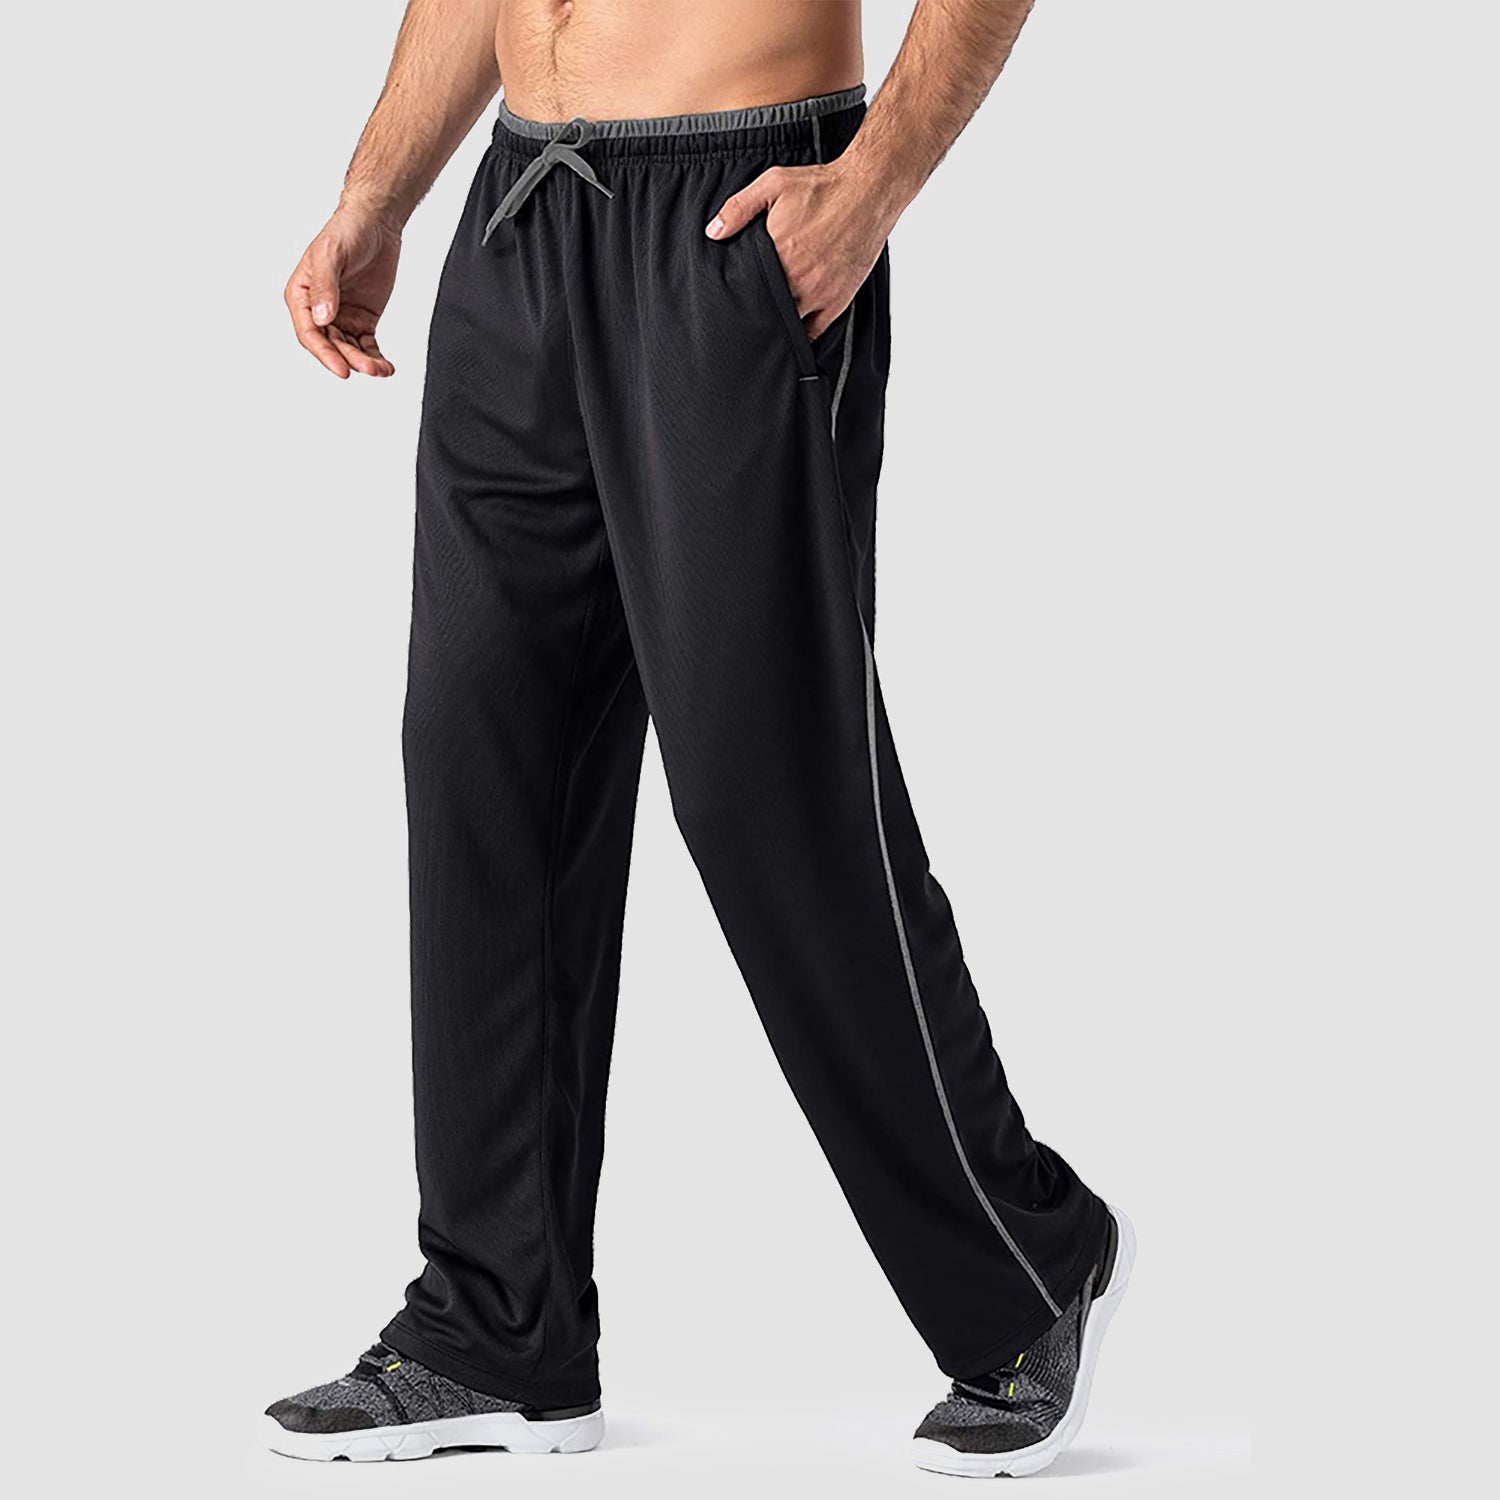 Men's Capris Joggers Drawstring Sweatpants – MAGCOMSEN